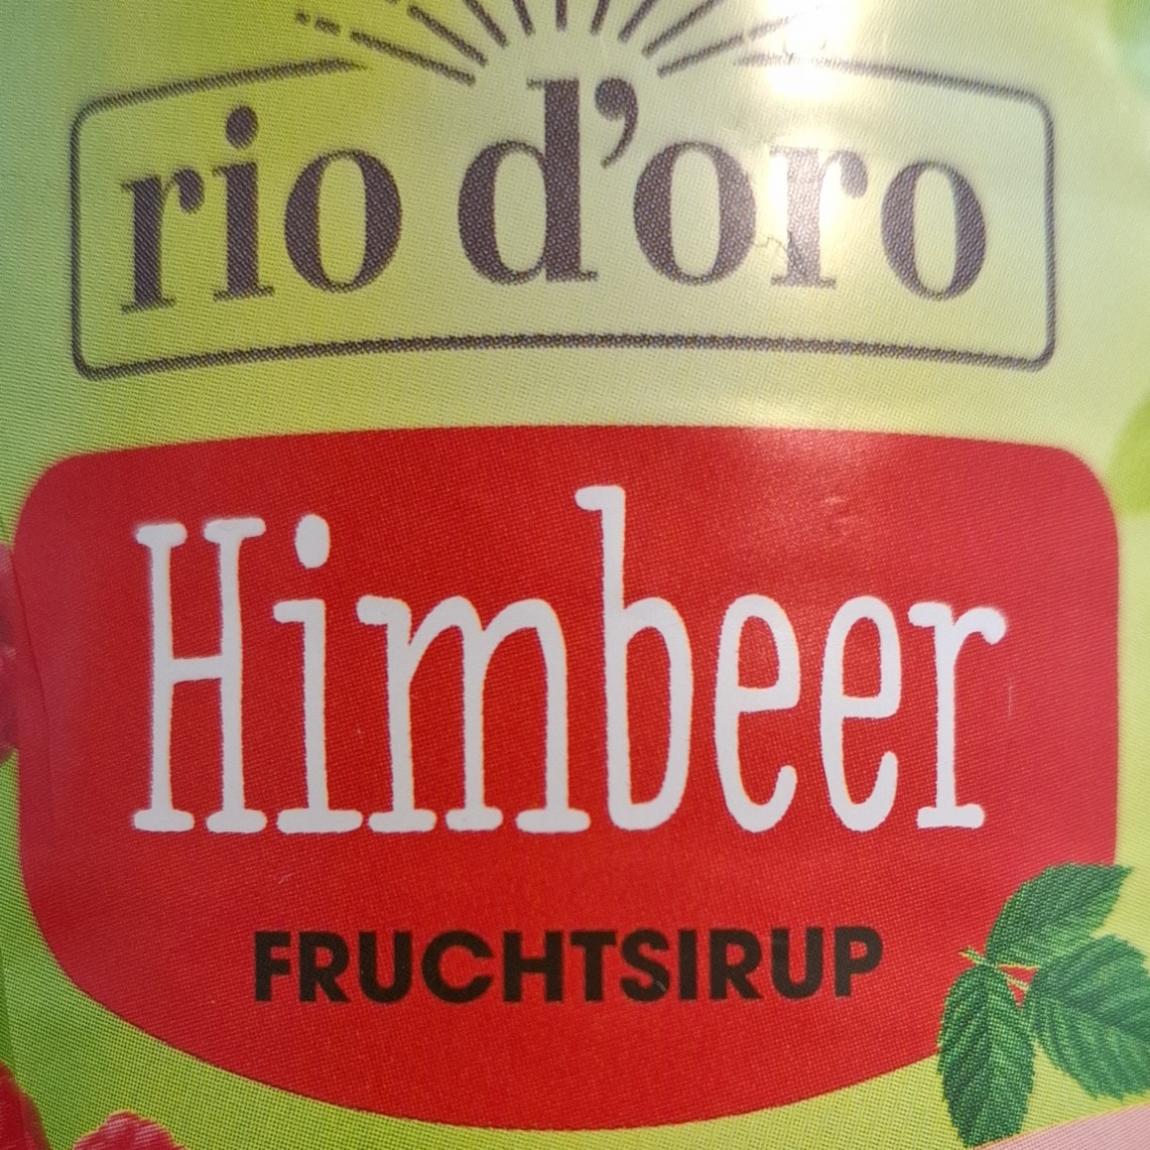 Fotografie - Himbeer fruchtsirup Rio d'oro